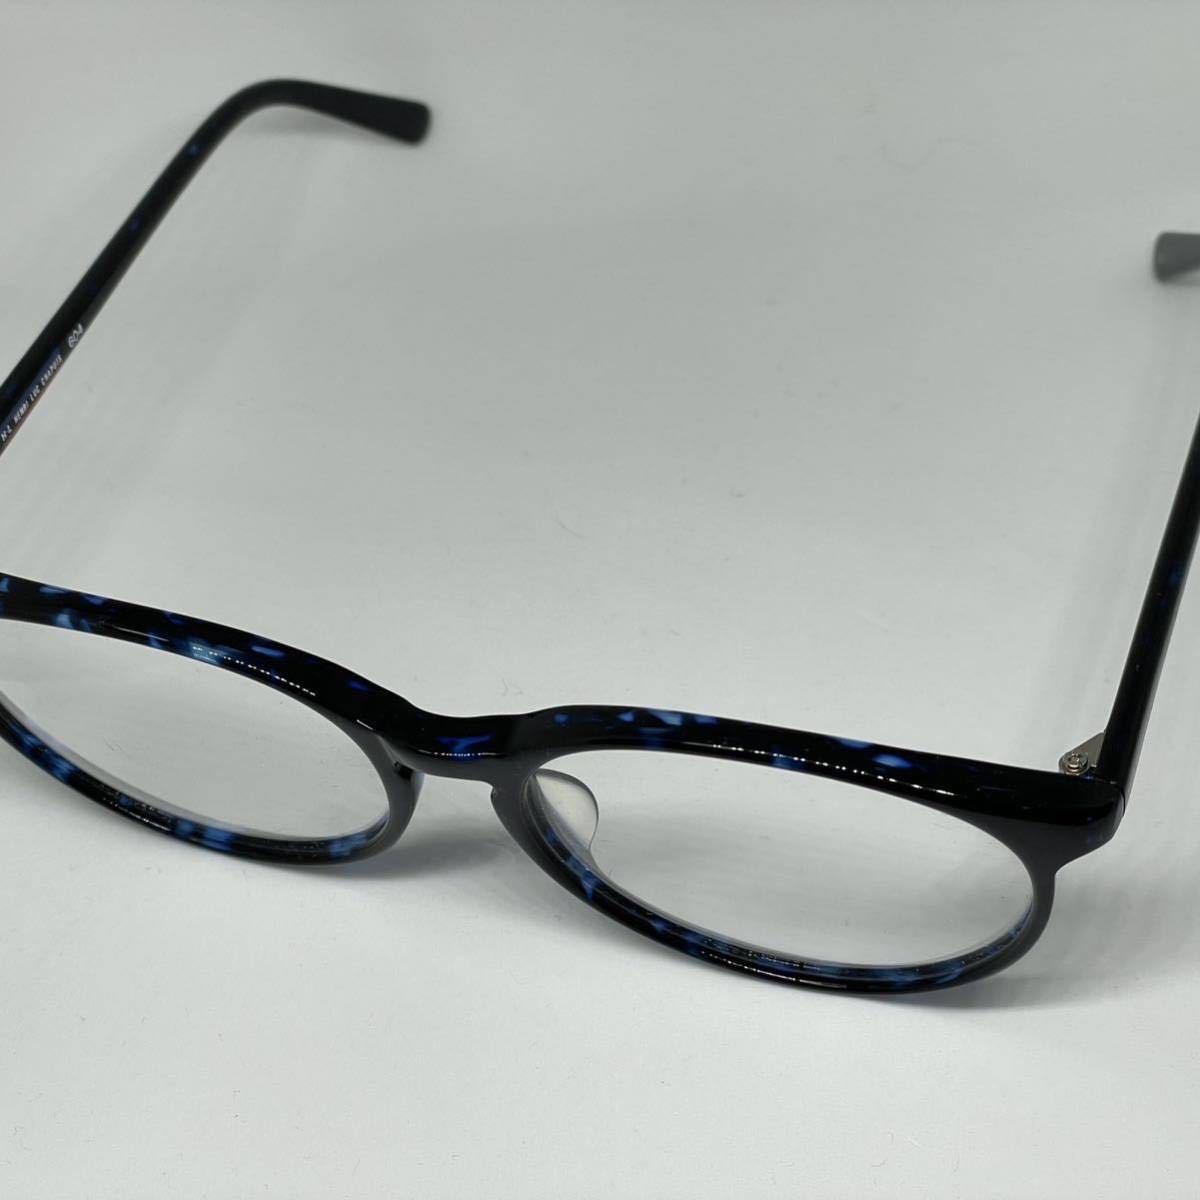 アウトレット レンズ交換対応 H・L HENRI LUC CHAPUIS ボストン メガネフレーム ブルーマーブル オプティーク 眼鏡 めがね